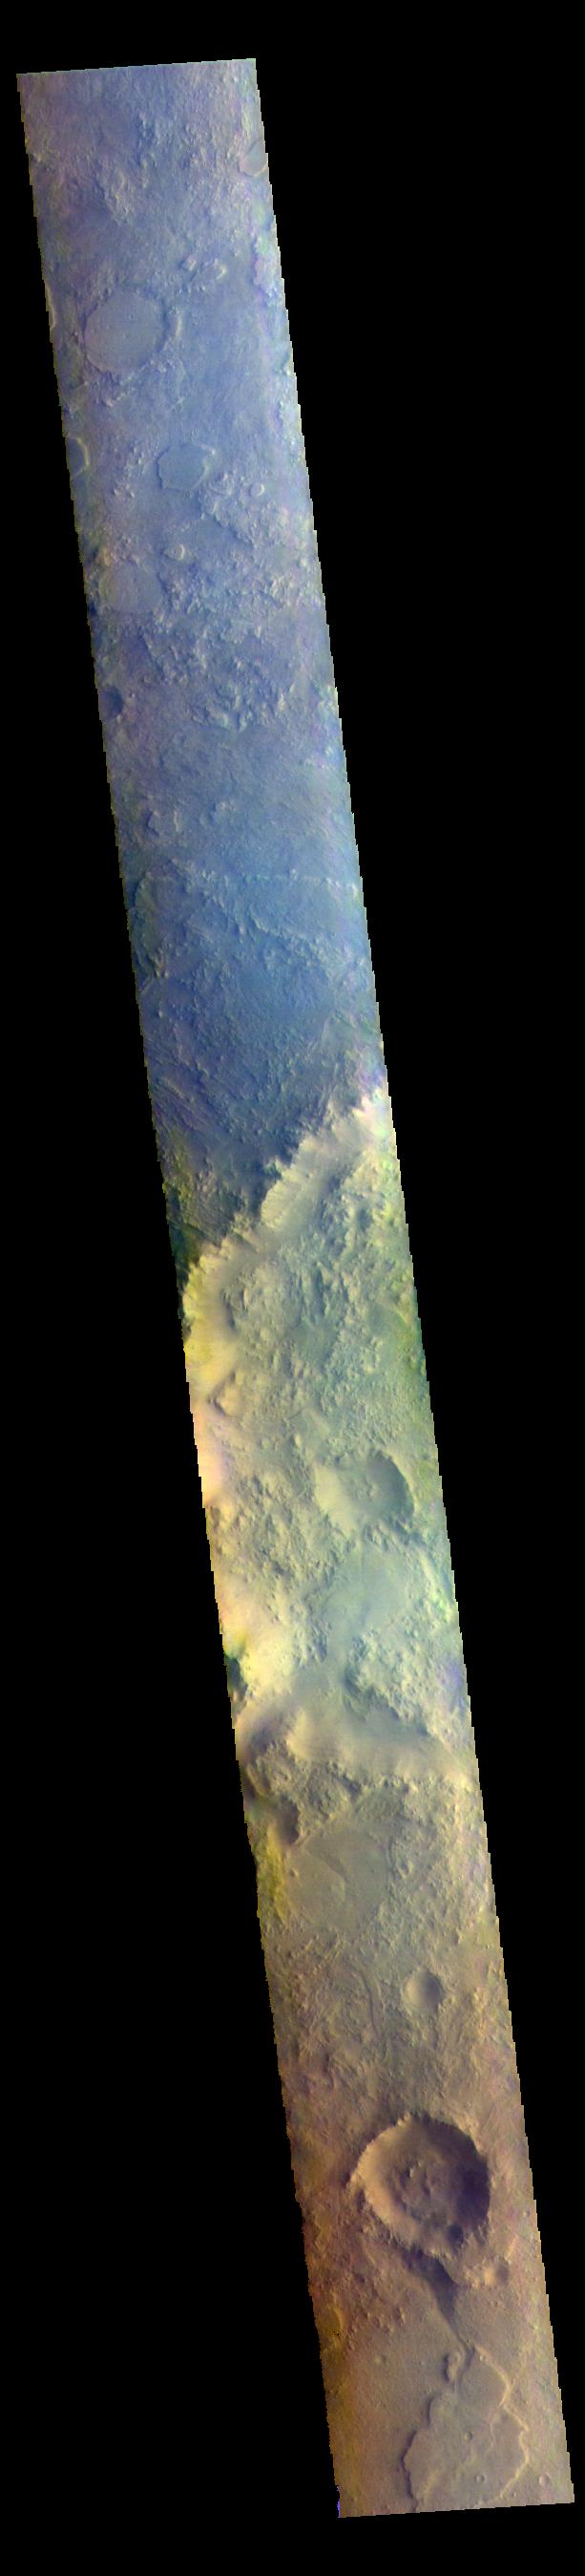 PIA25054: Terra Sabaea - False Color